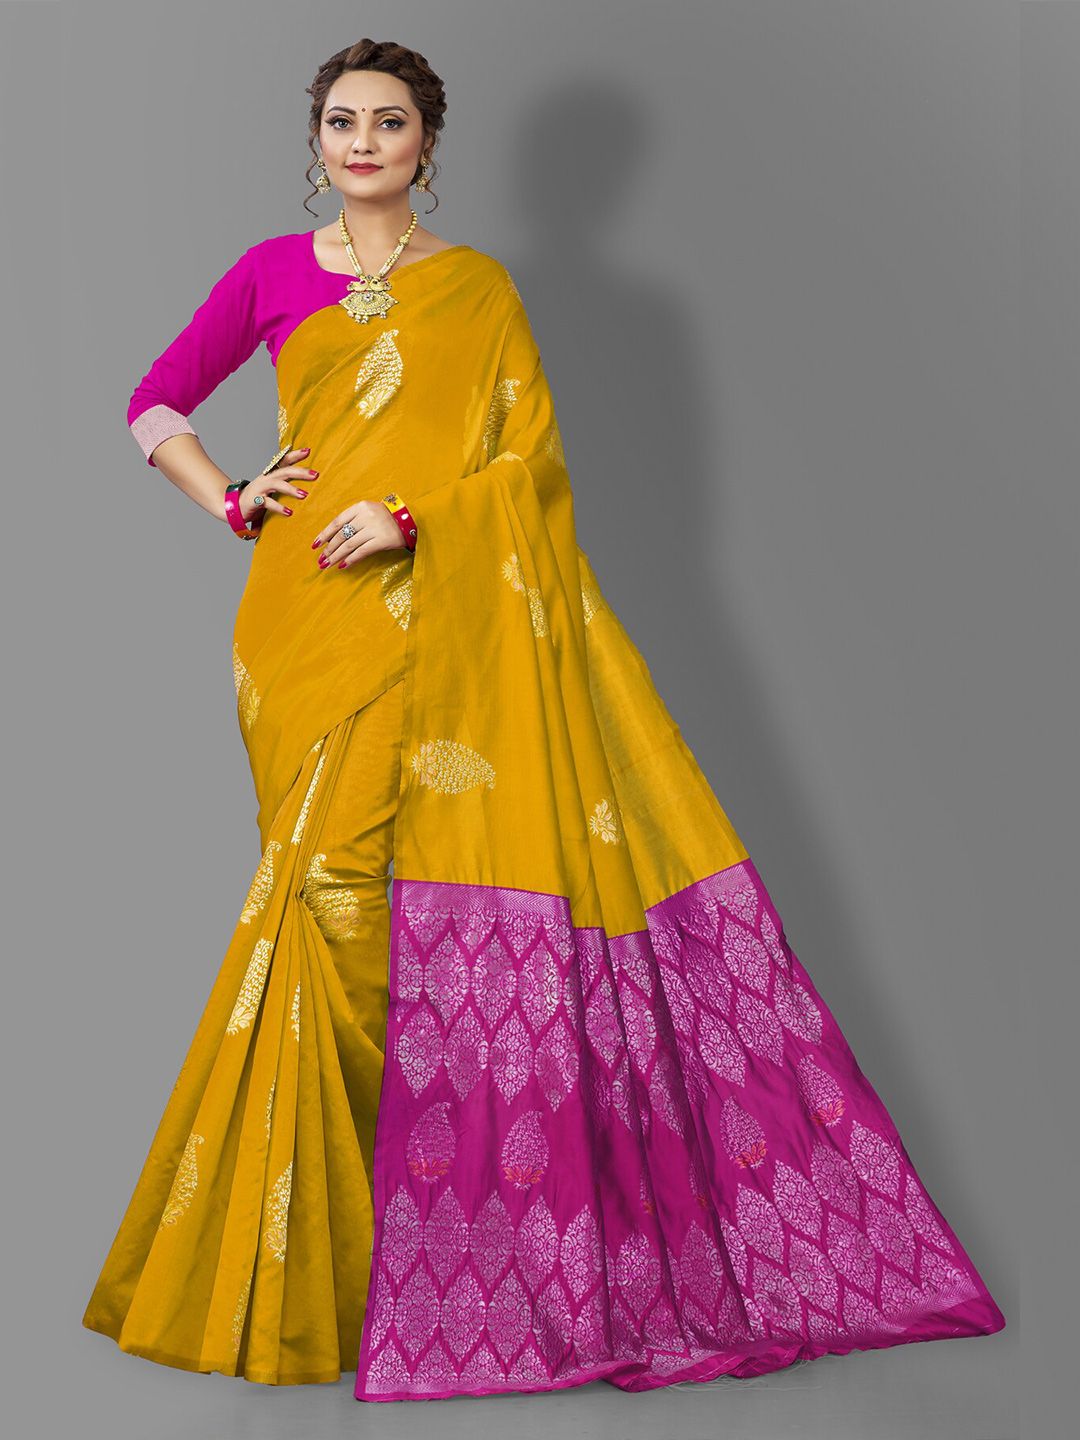 Wuxi Gold-Toned & Pink Woven Design Pure Silk Banarasi Saree Price in India